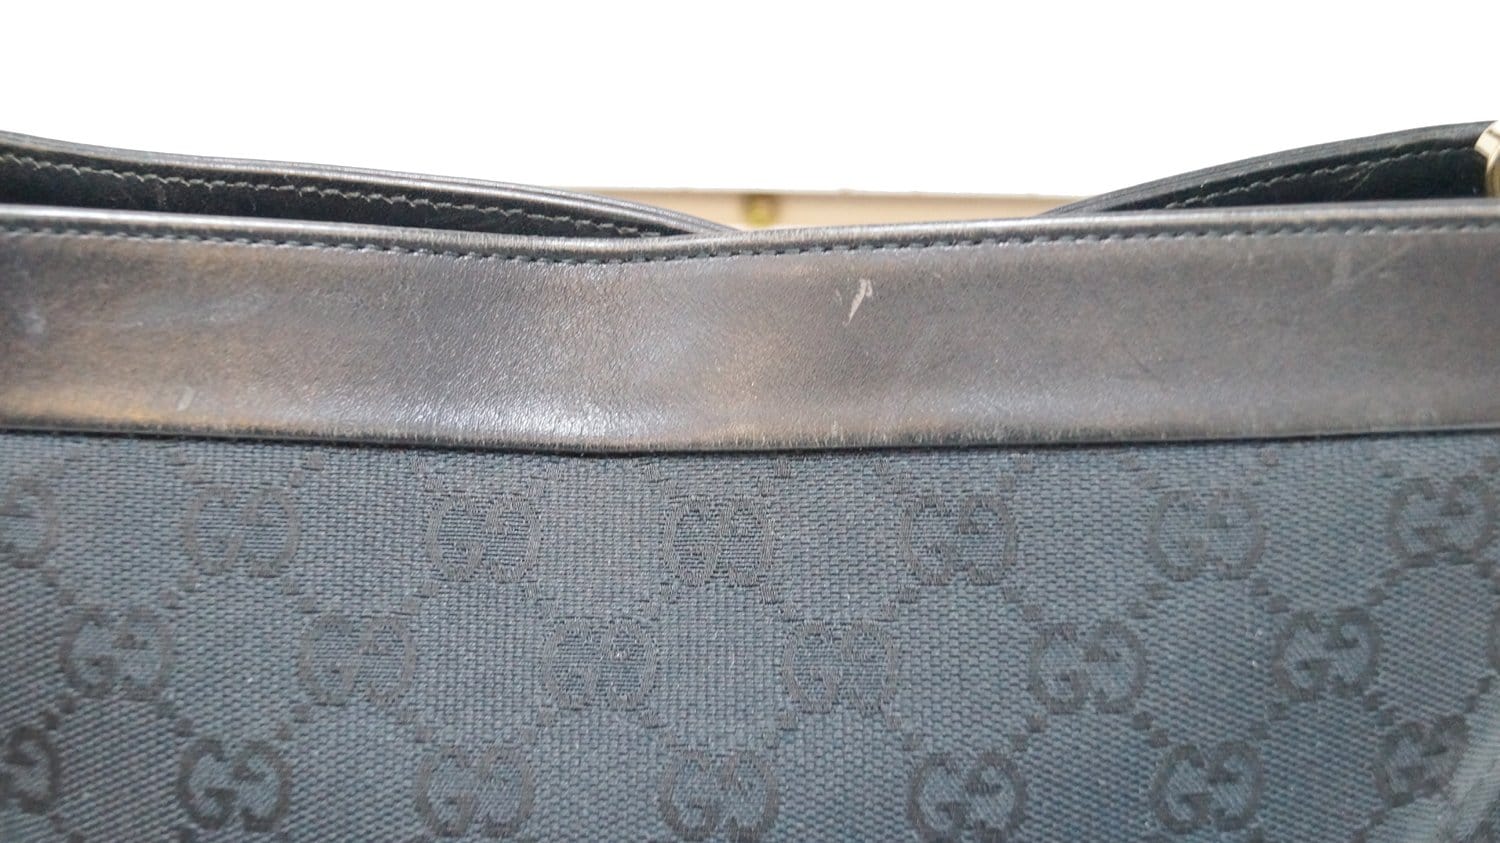 vintage gucci black leather shoulder bag